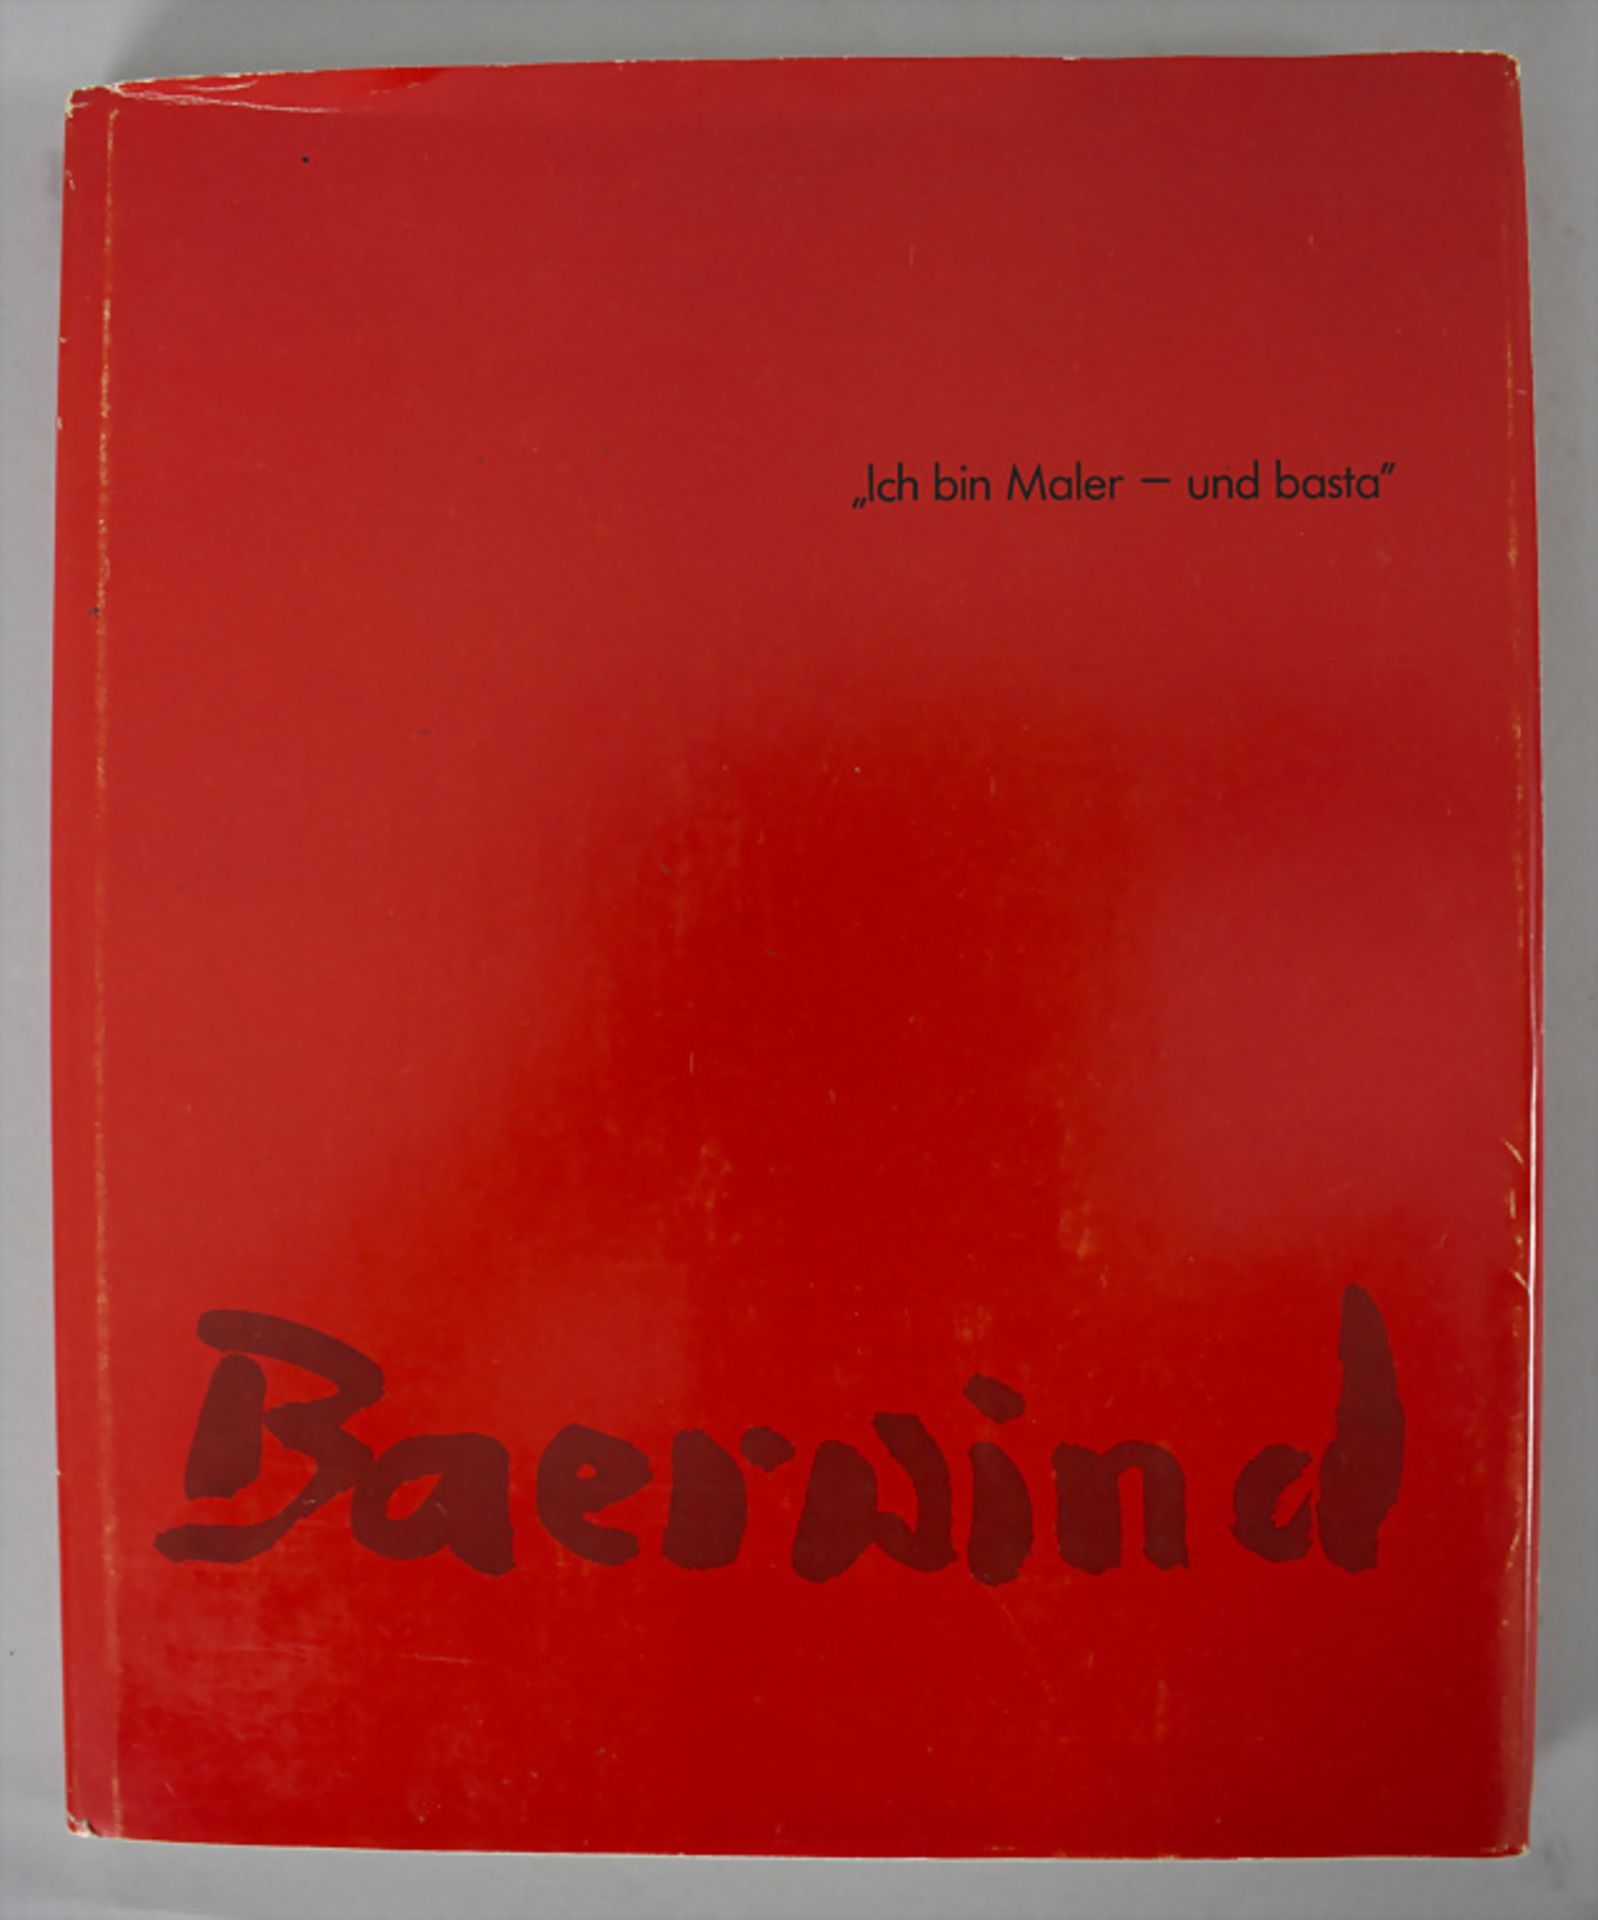 Rudi Baerwind (1910-1982) 'Ich bin Maler - und basta', 1974